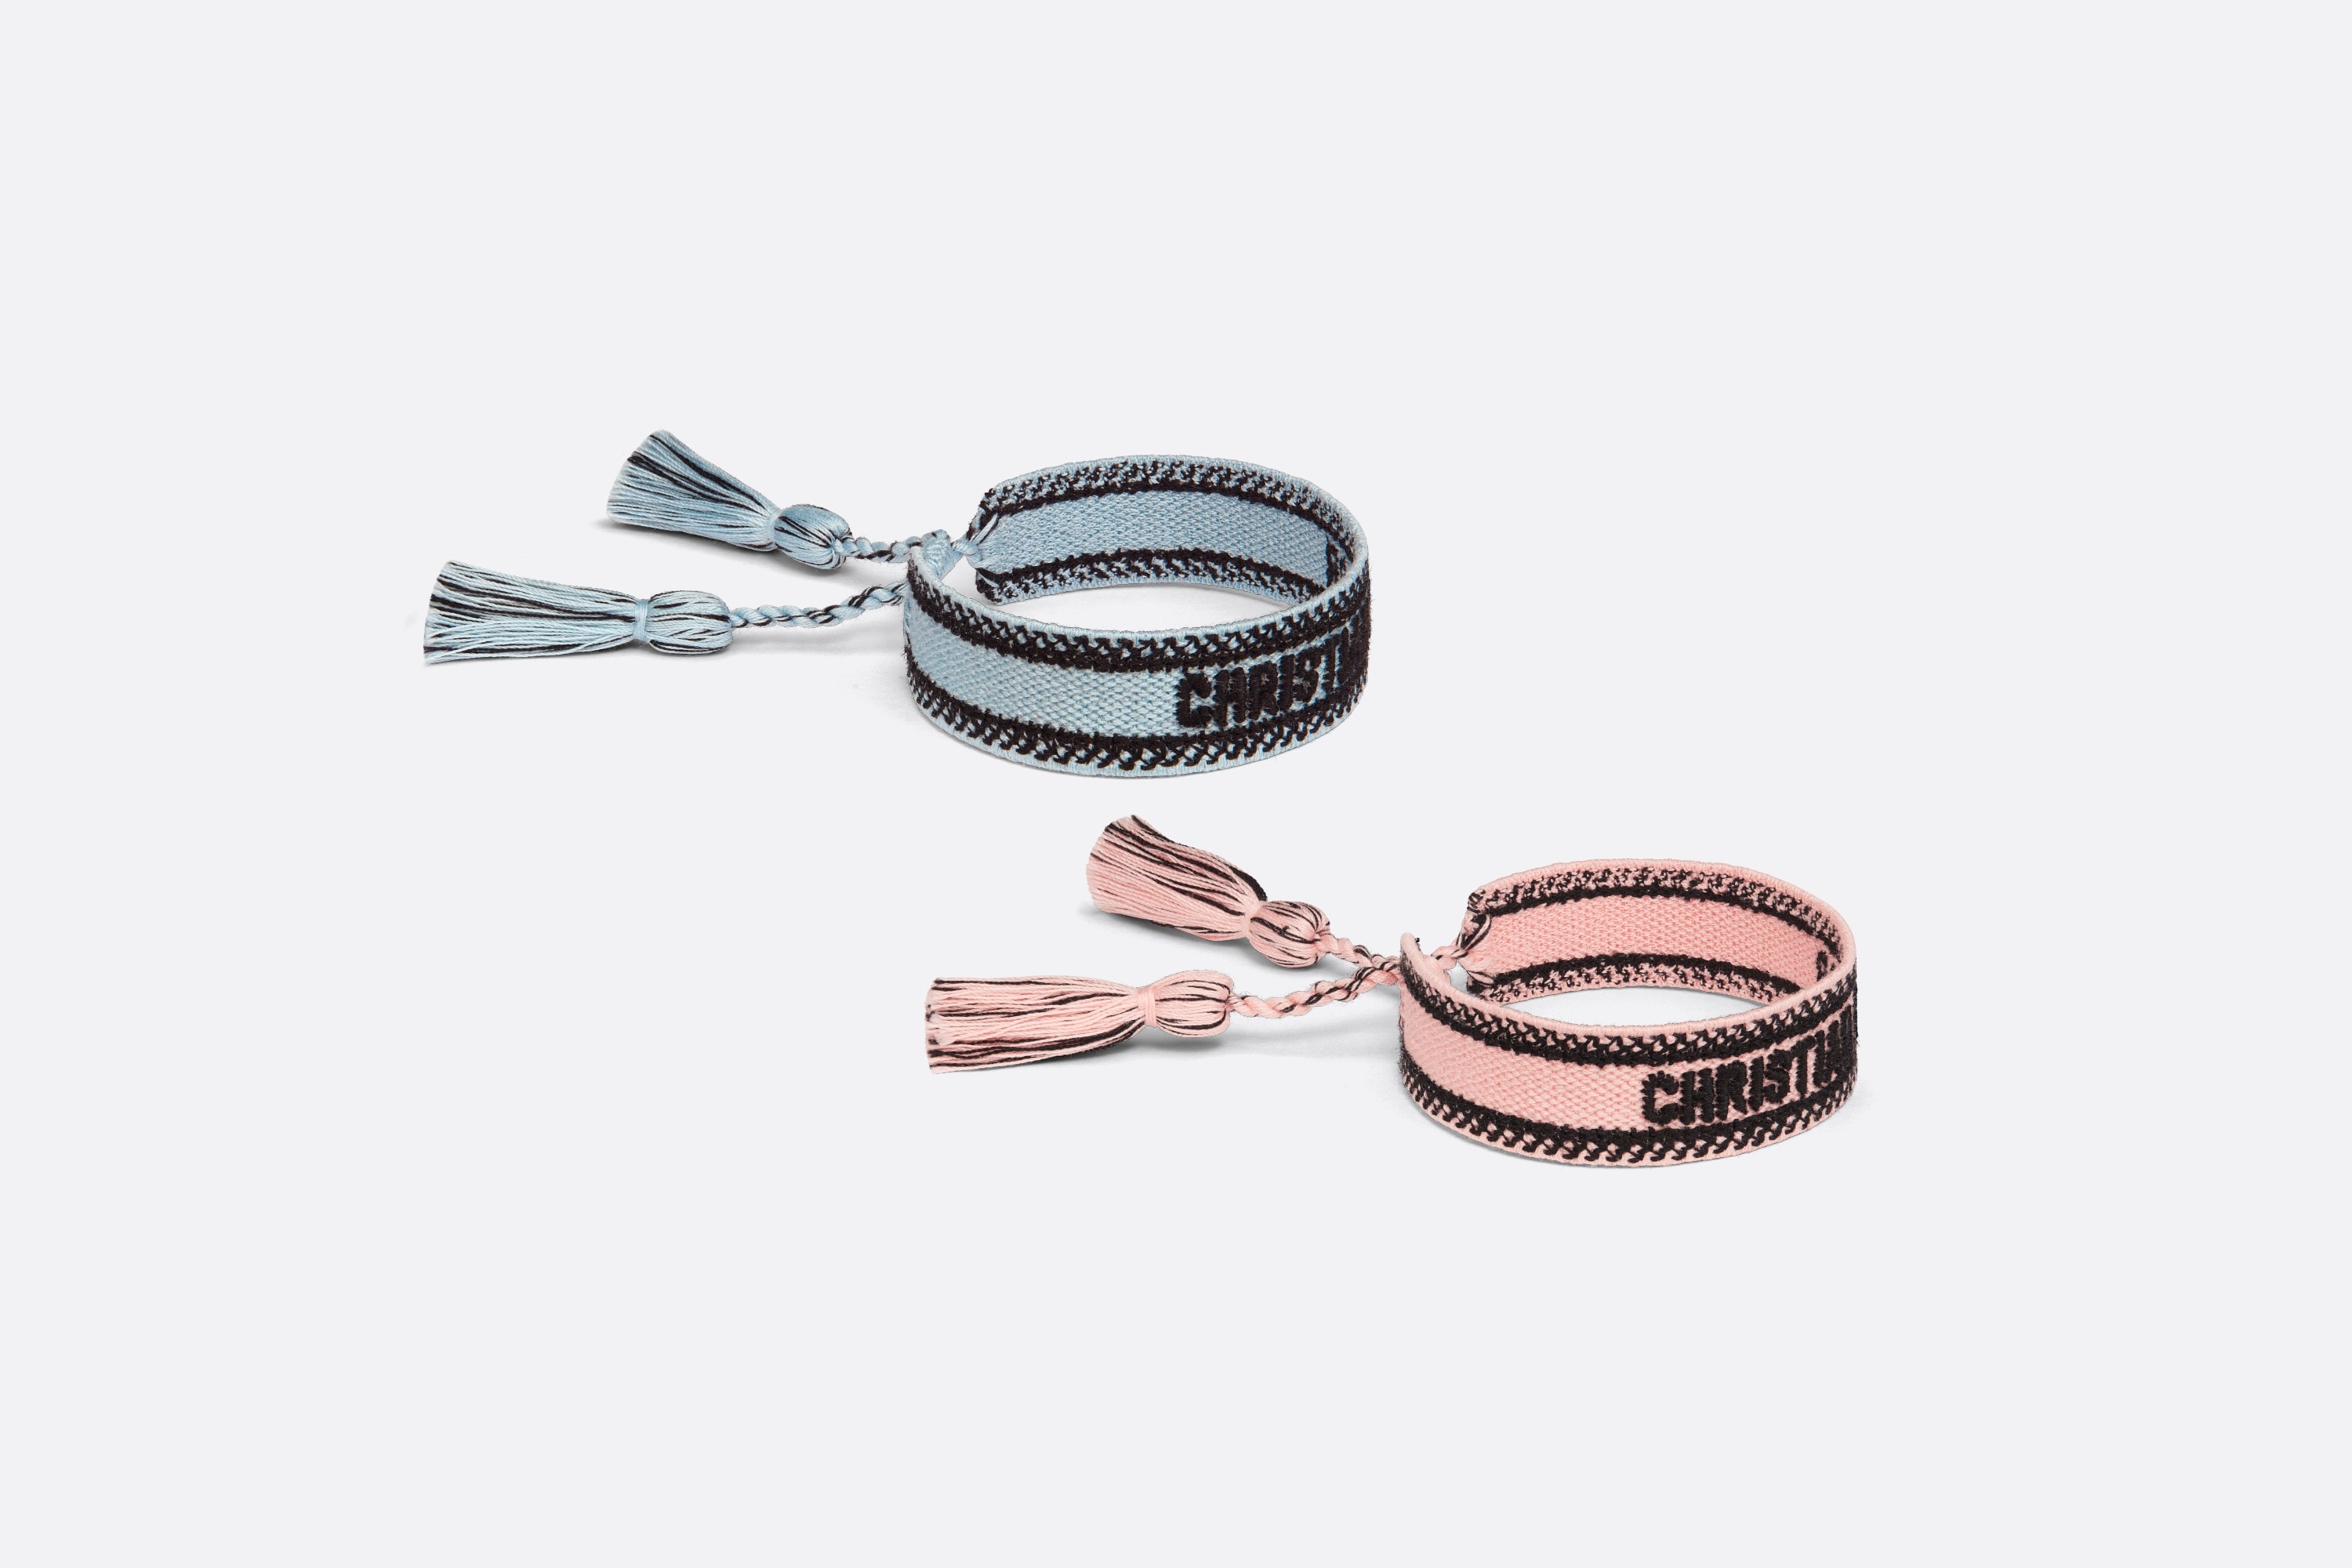 Christian Dior Bracelet Set - 1